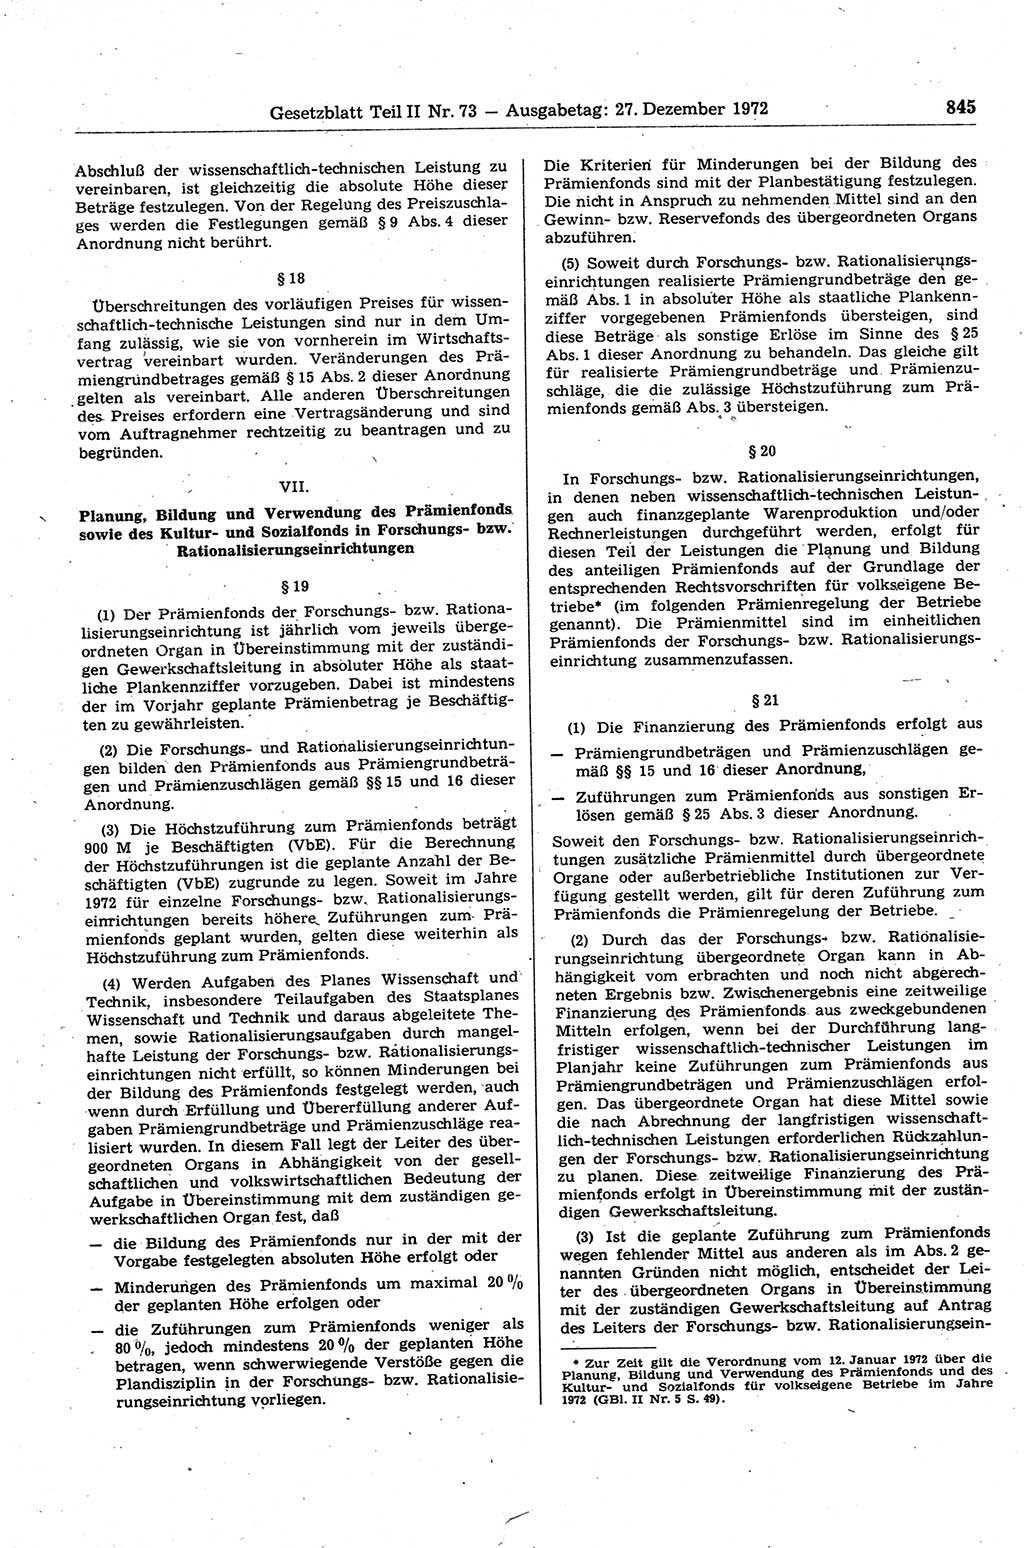 Gesetzblatt (GBl.) der Deutschen Demokratischen Republik (DDR) Teil ⅠⅠ 1972, Seite 845 (GBl. DDR ⅠⅠ 1972, S. 845)